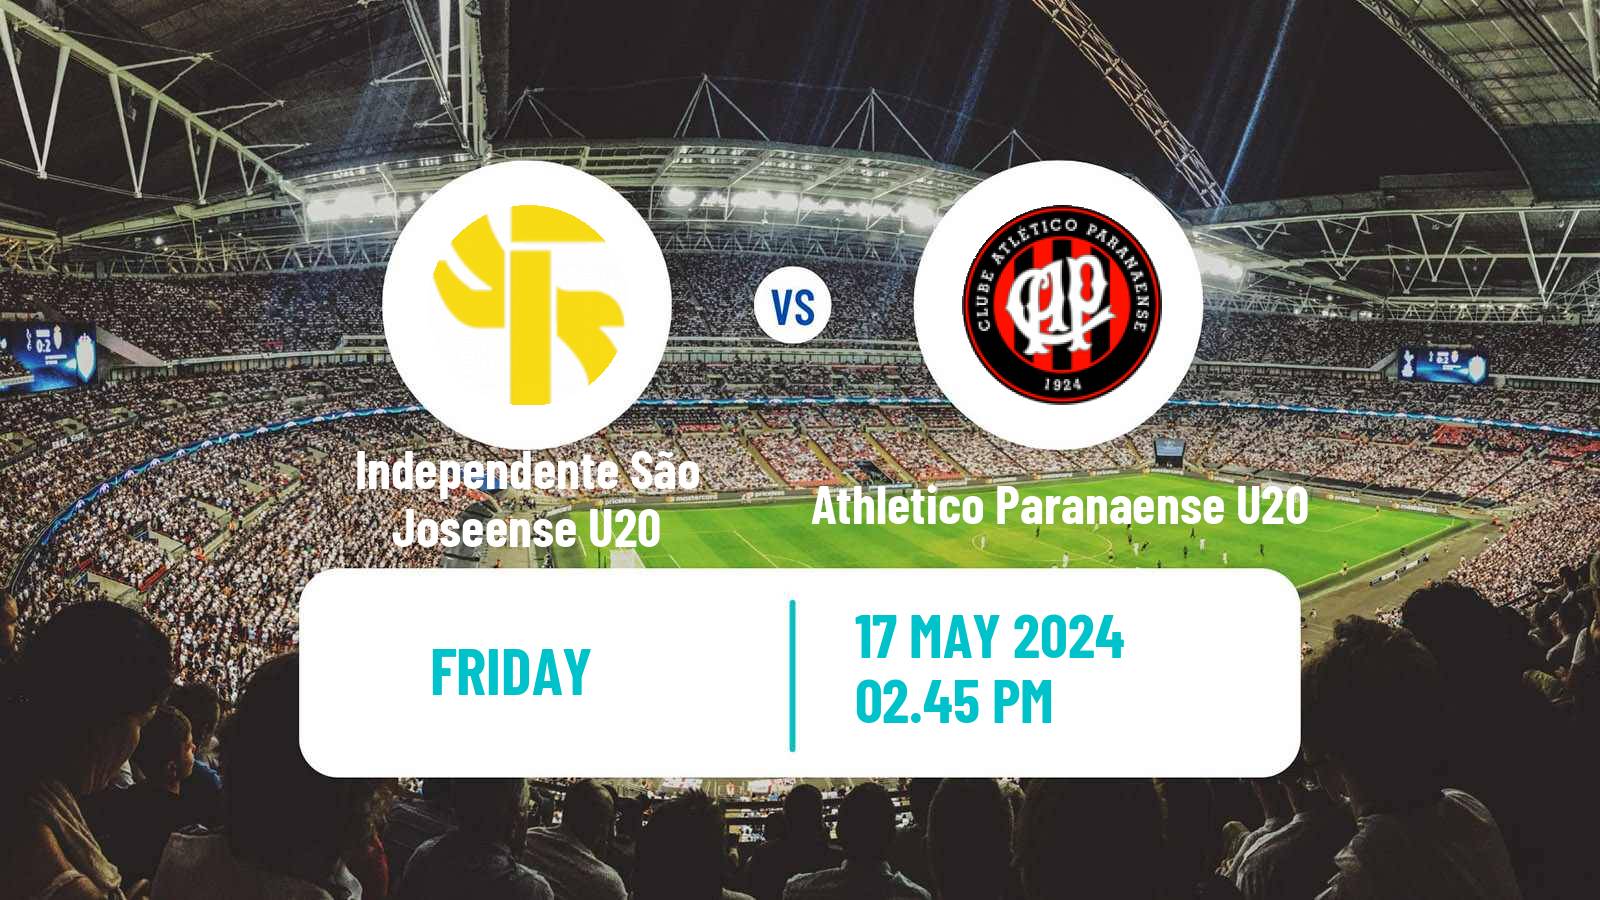 Soccer Brazilian Paranaense U20 Independente São Joseense U20 - Athletico Paranaense U20